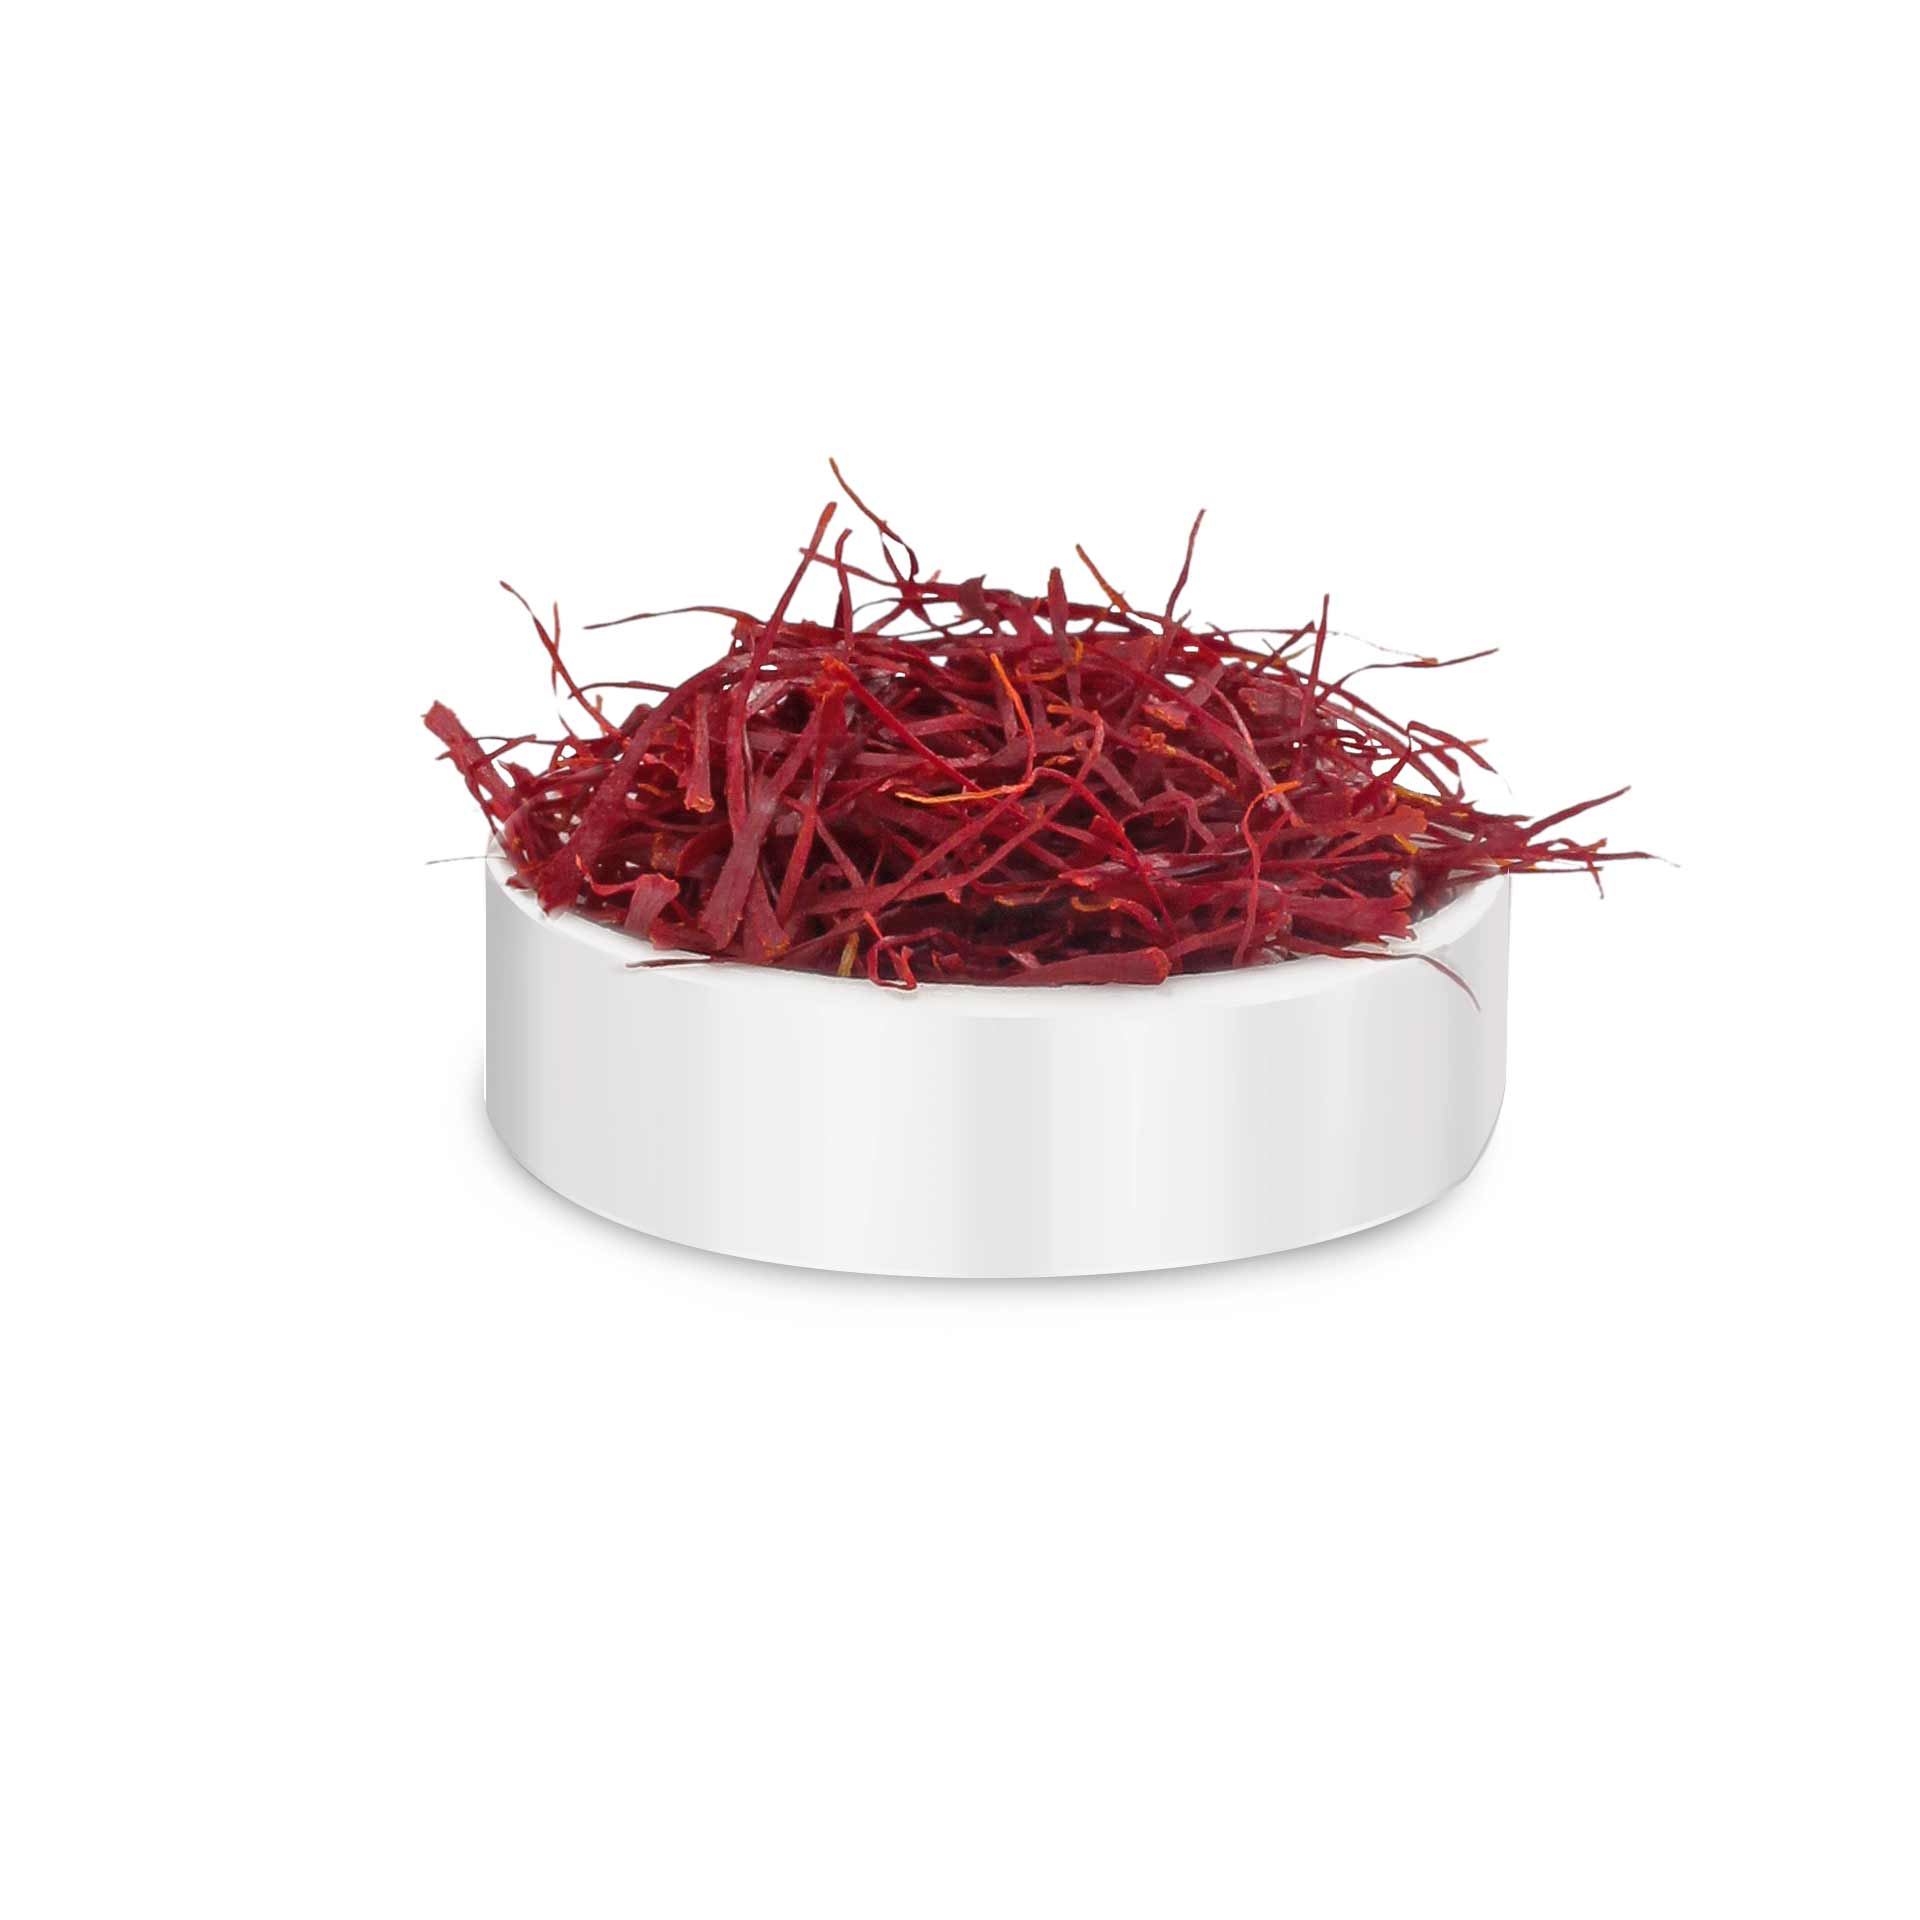 Product: Conscious Food Saffron 1g